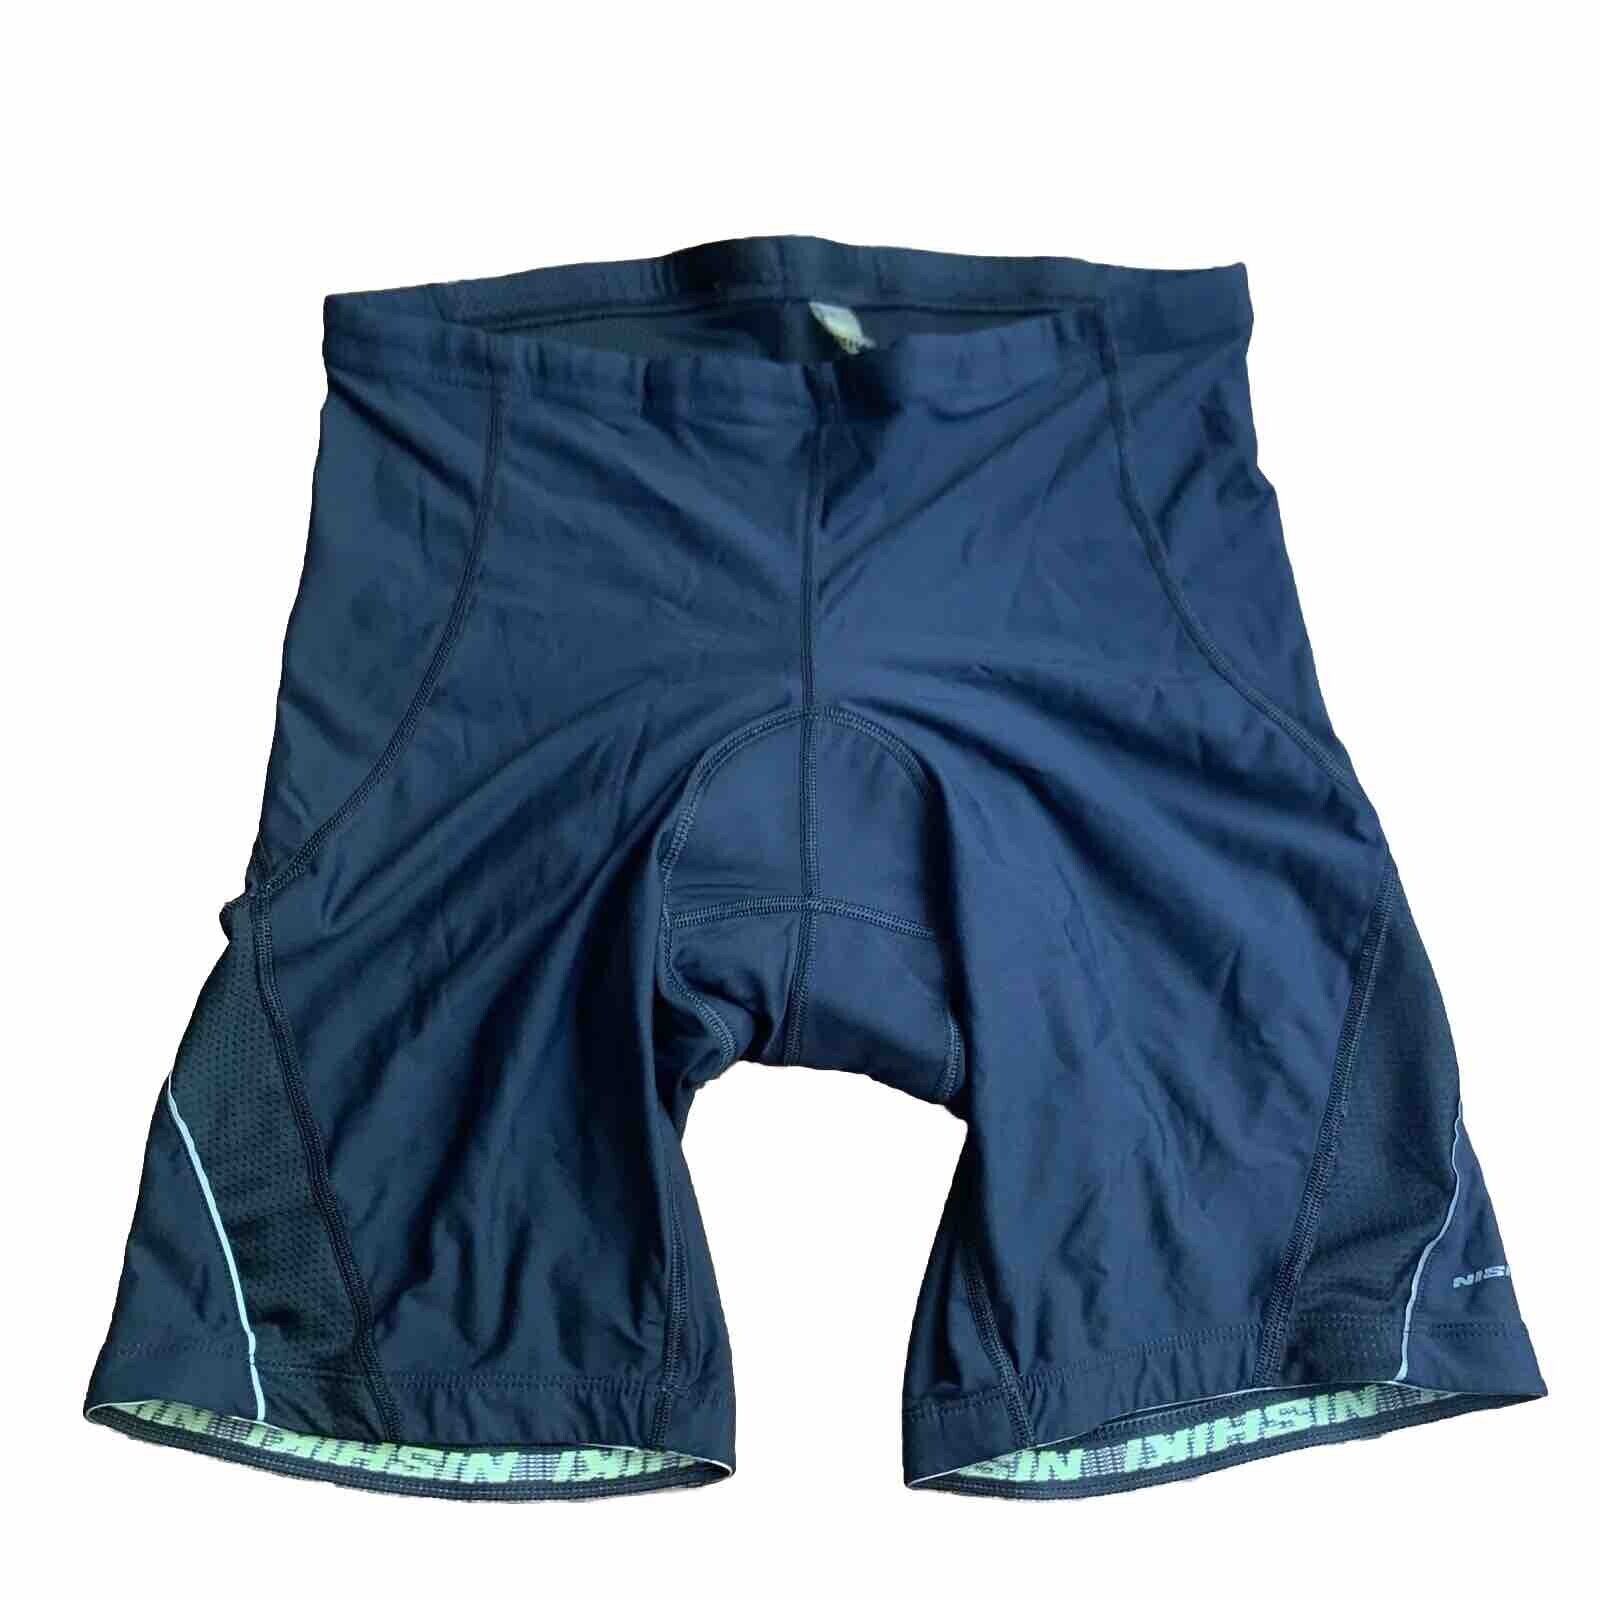 NISHIKI Cycling Bicycle Shorts Men Mountain Bike Shorts XL